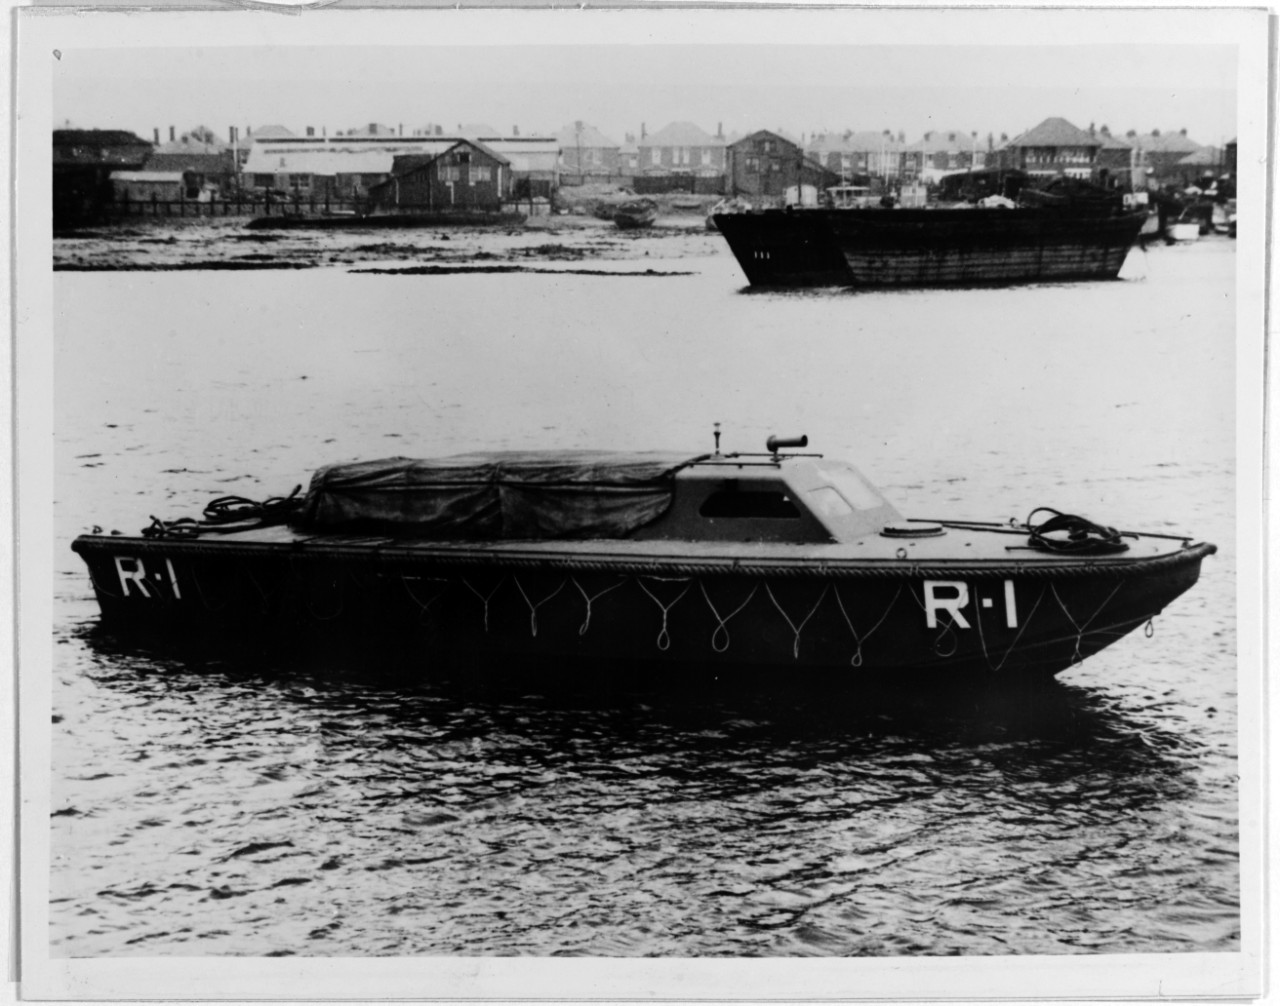 British personnel landing craft, World War II